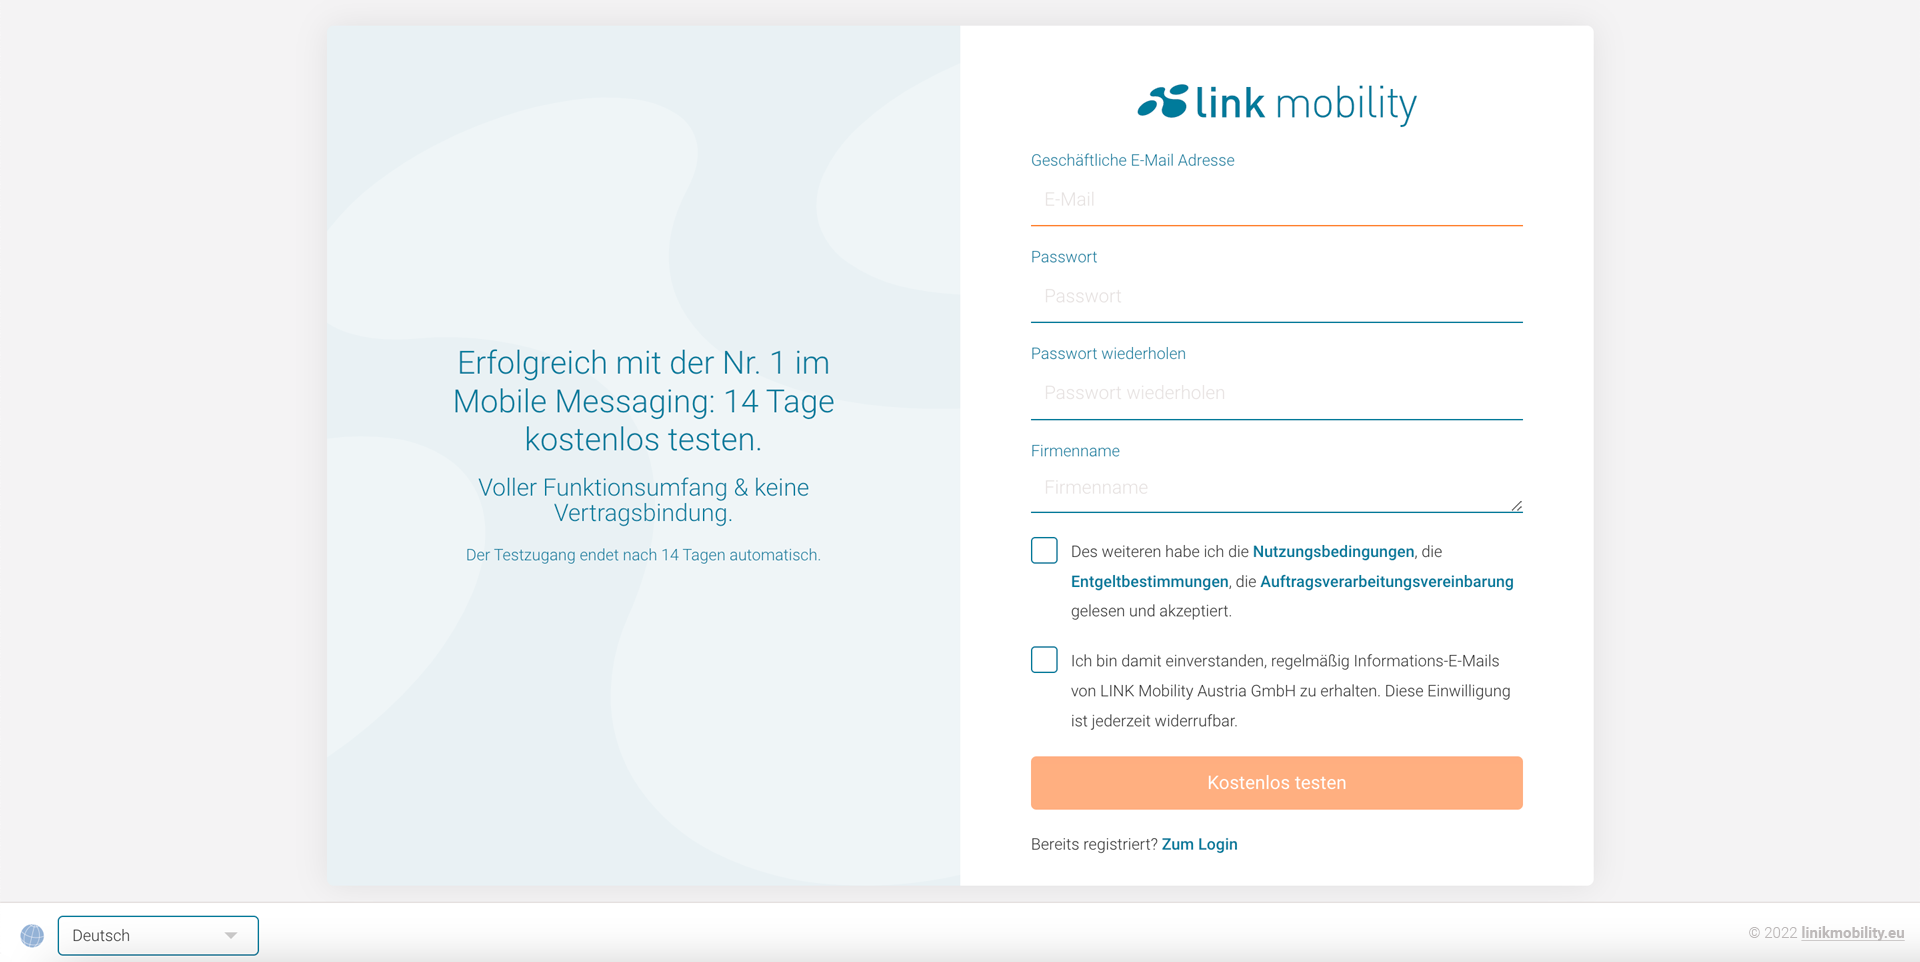 In wenigen Schritten können das Messaging Portal in vollem Funktionsumfang kostenlos testen und ersten Ihrer ersten SMS-Nachrichten versenden. Registrieren Sie sich dazu zunächst unverbindluch unter www.account.linkmobility.eu.